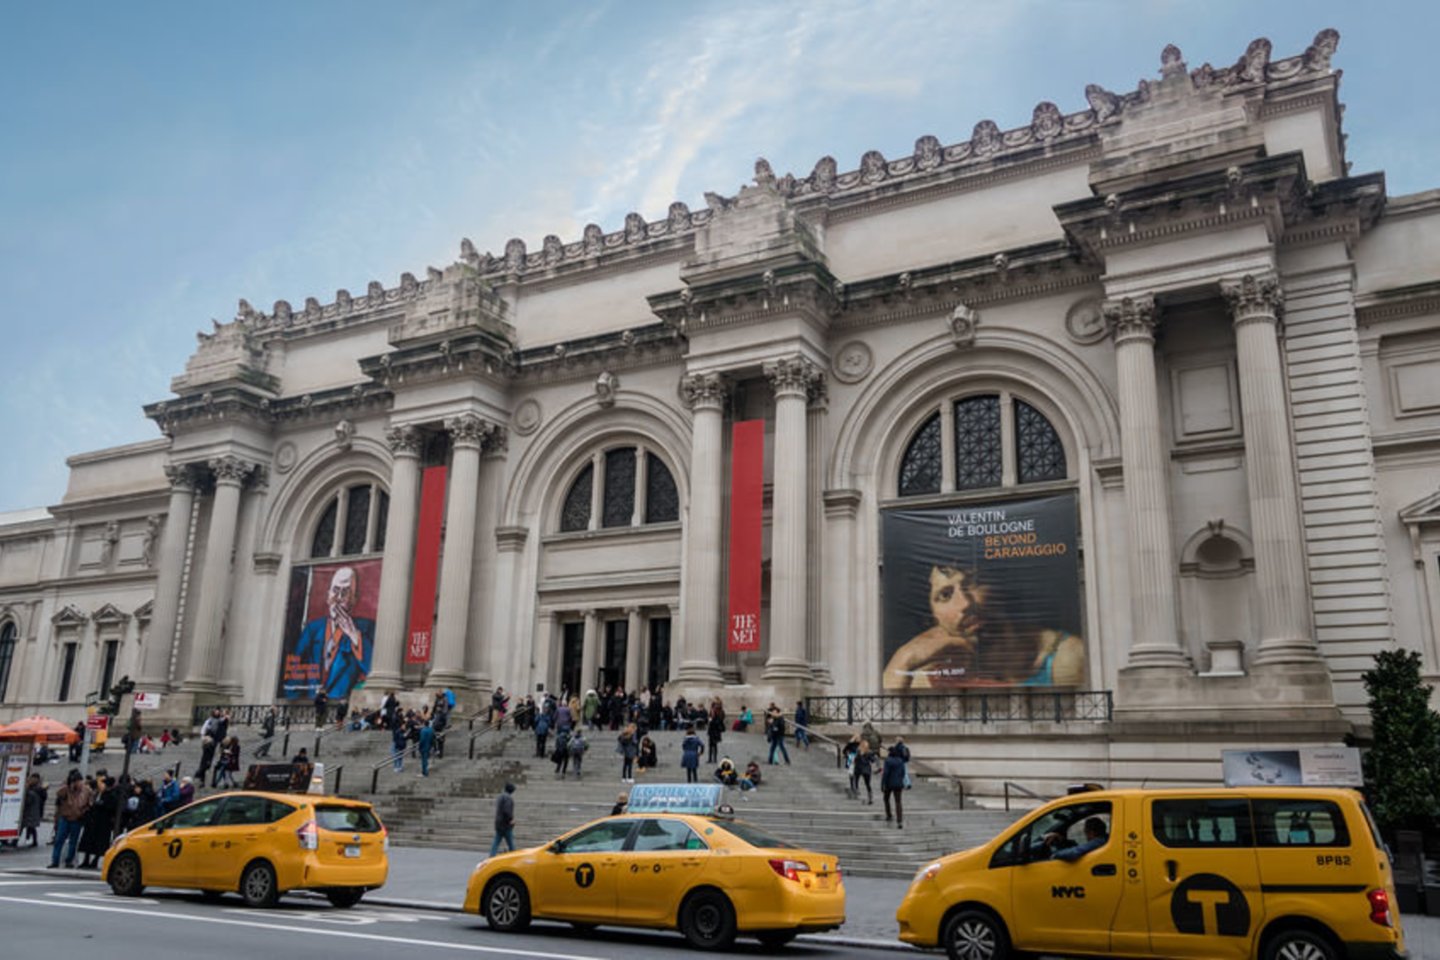 1872 m. Niujorke pirmą kartą duris visuomenei atvėrė Metropolitano meno muziejus – šiuo metu vienas didžiausių pasaulyje meno muziejų.<br>123rf